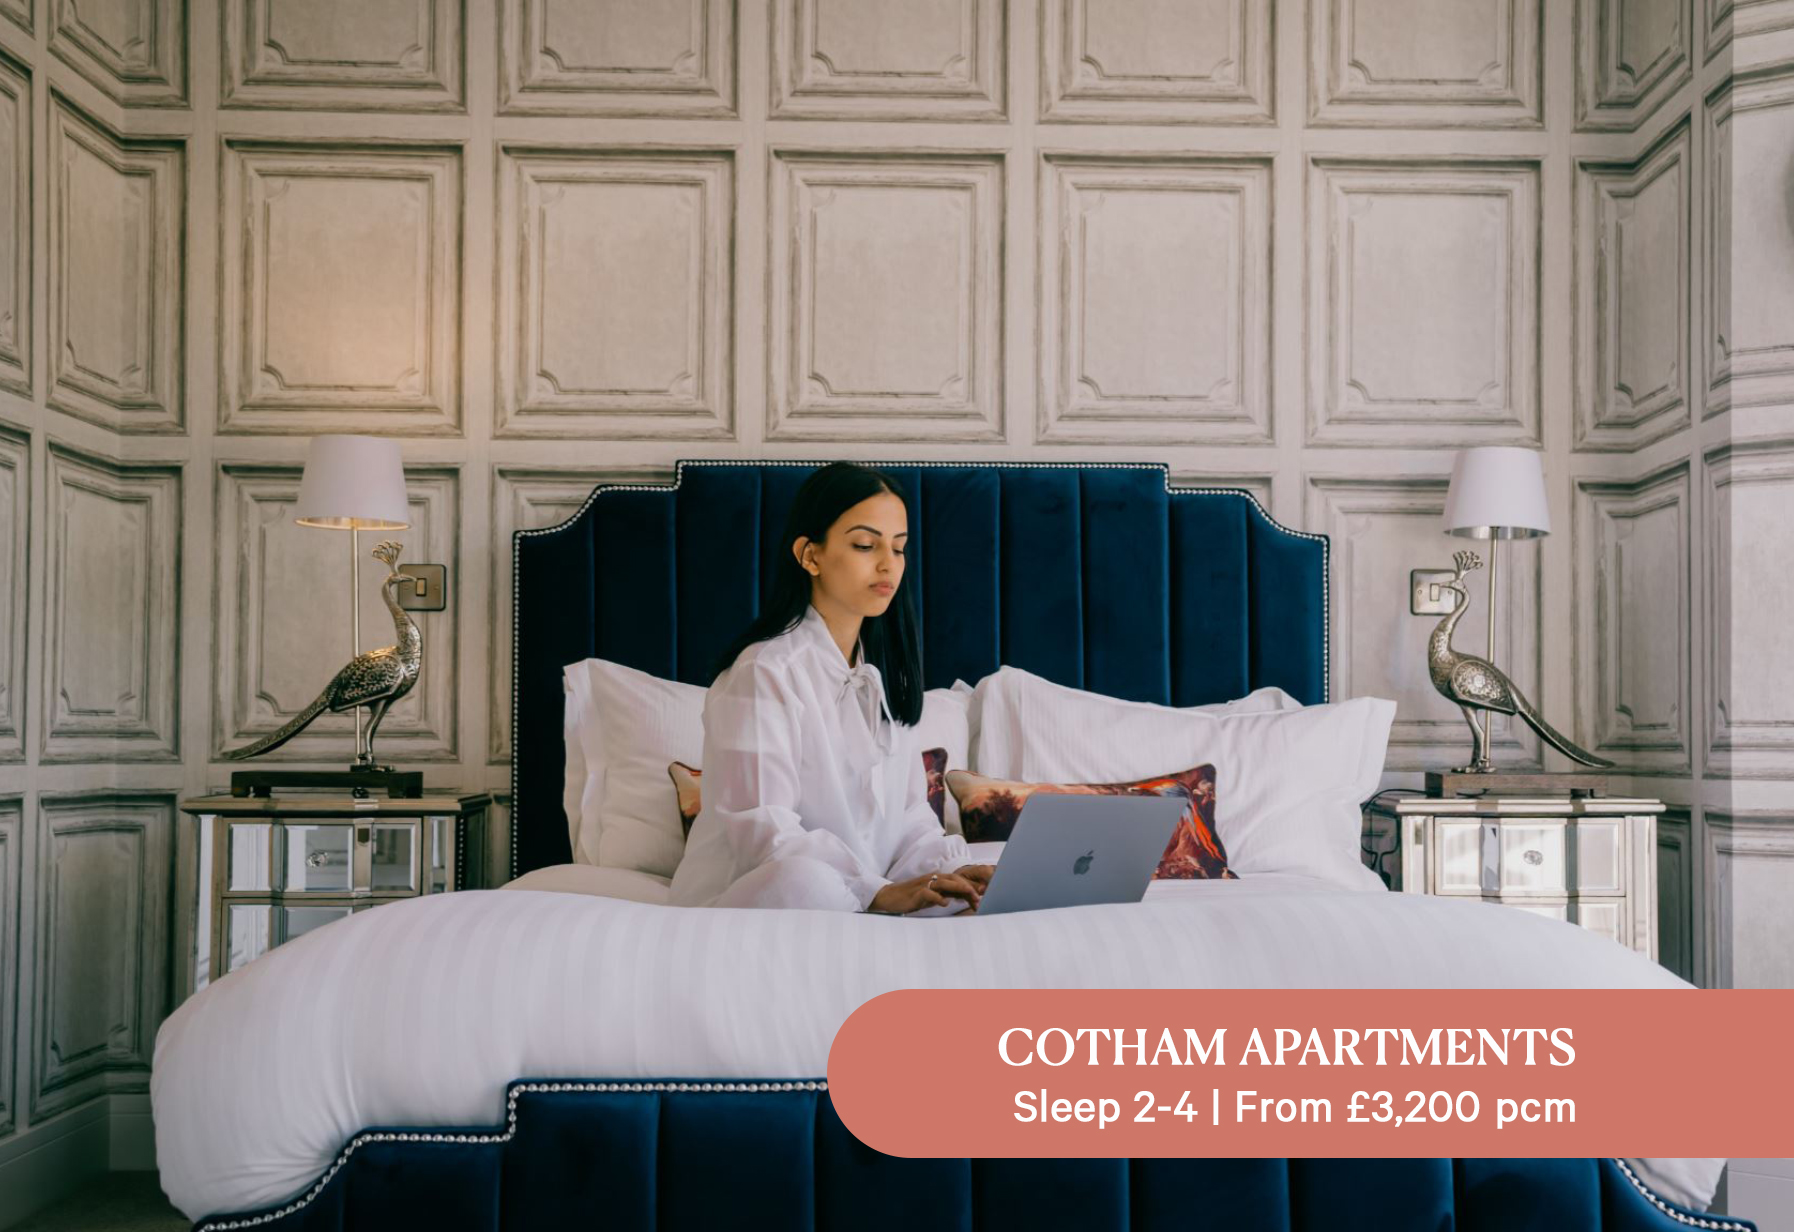 Cotham Apartments, Bristol - Your Apartment - Short Term Lets